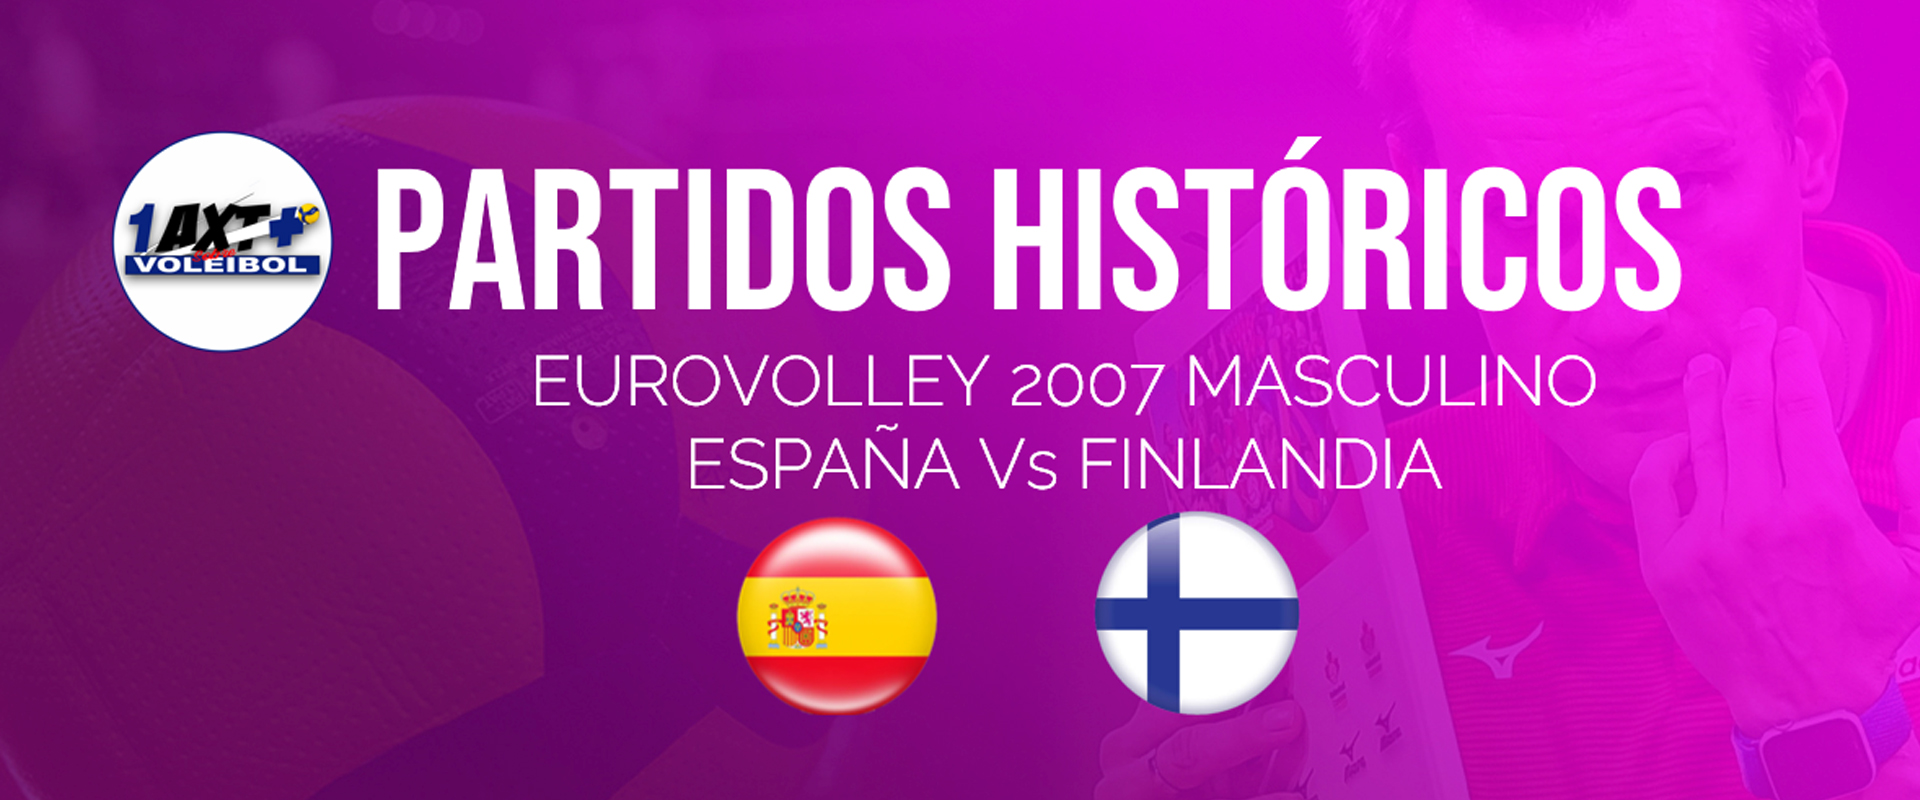 Eurovolley 2007 (M): Semifinal España Vs Finlandia